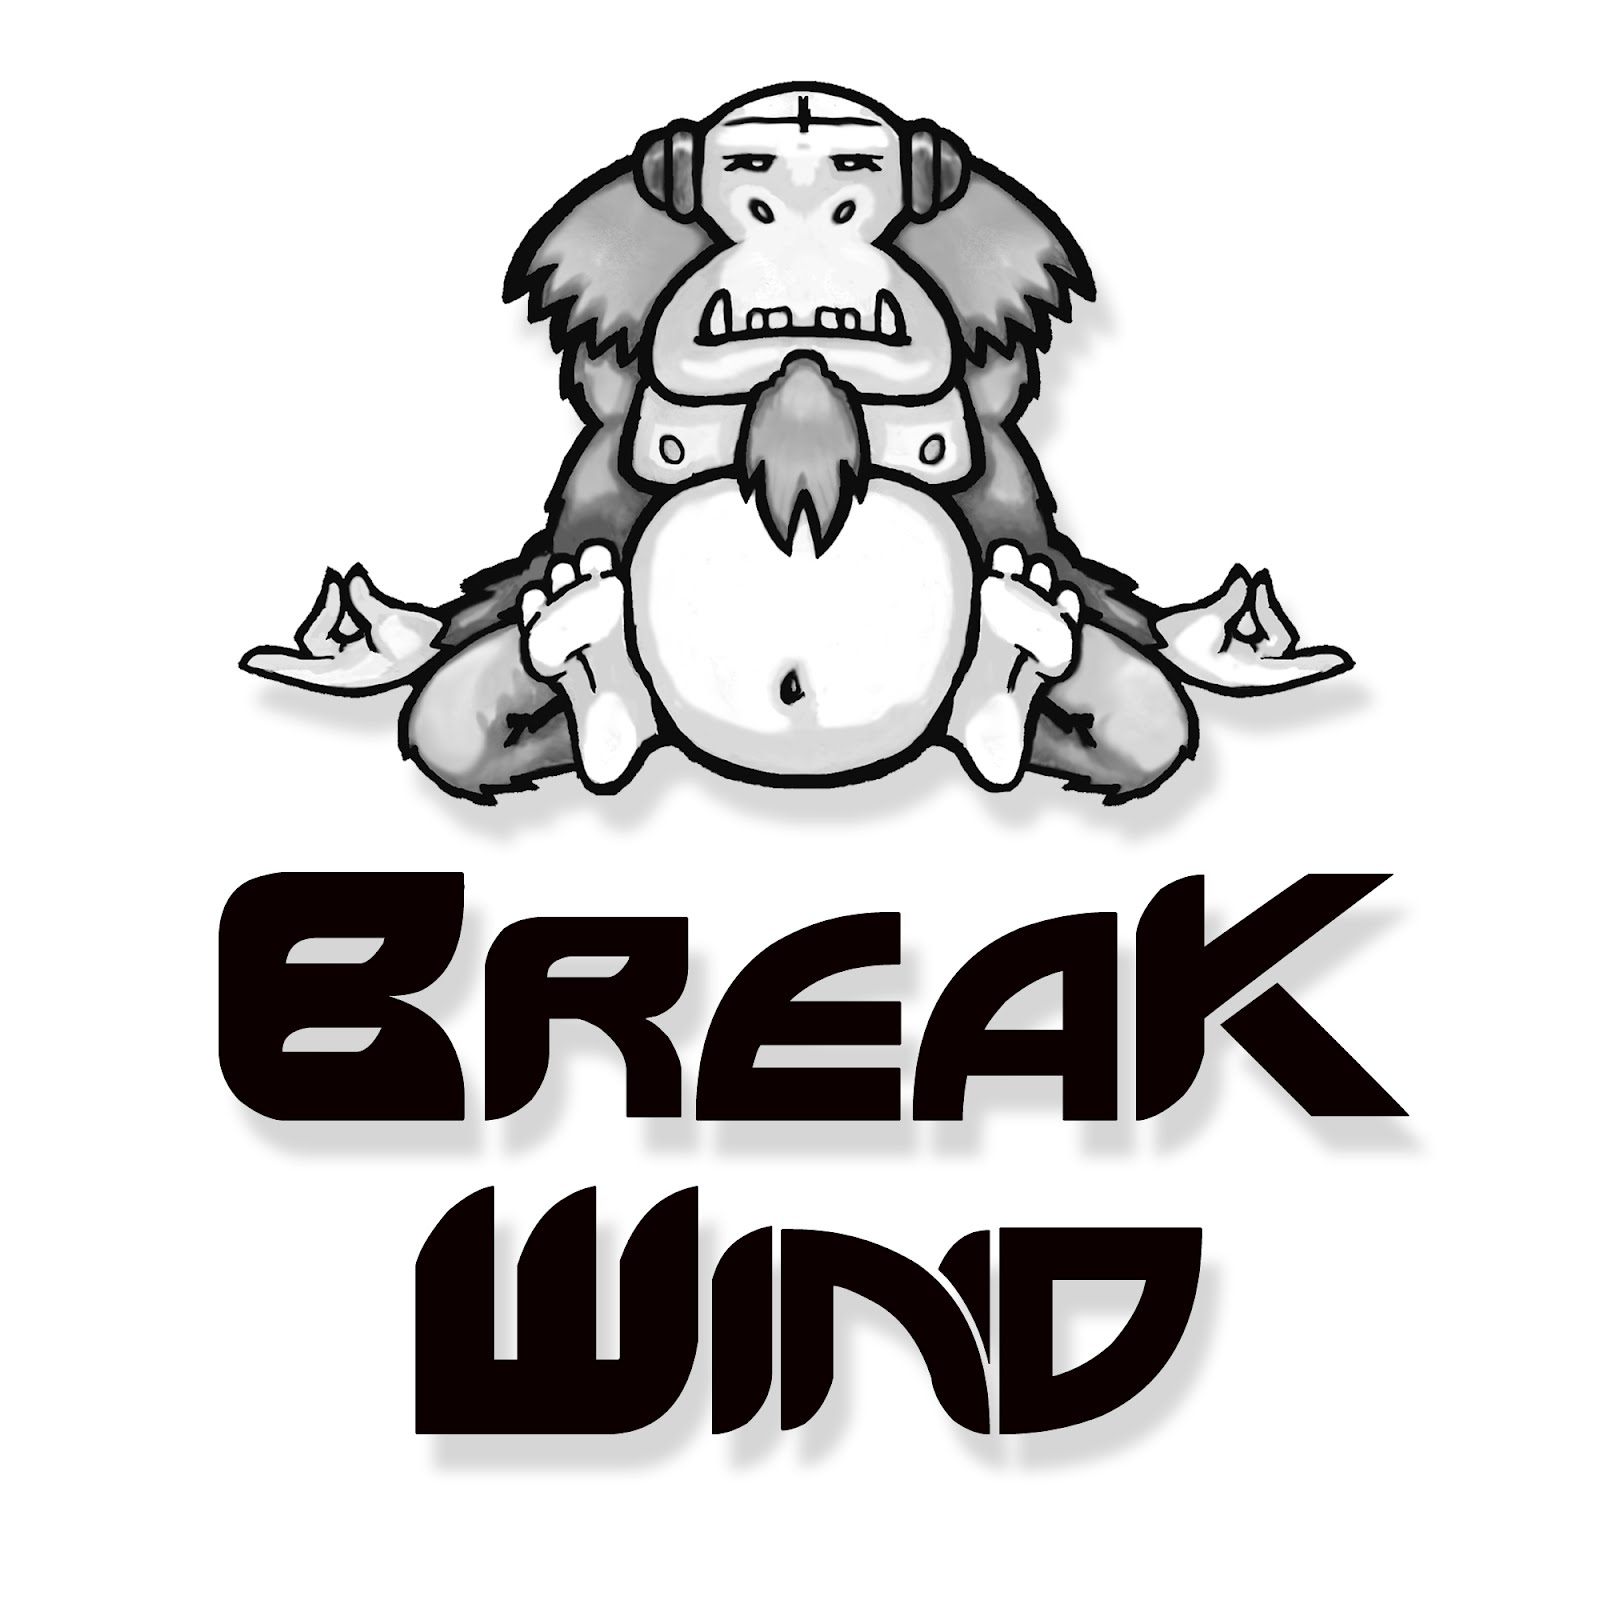 Break Wind